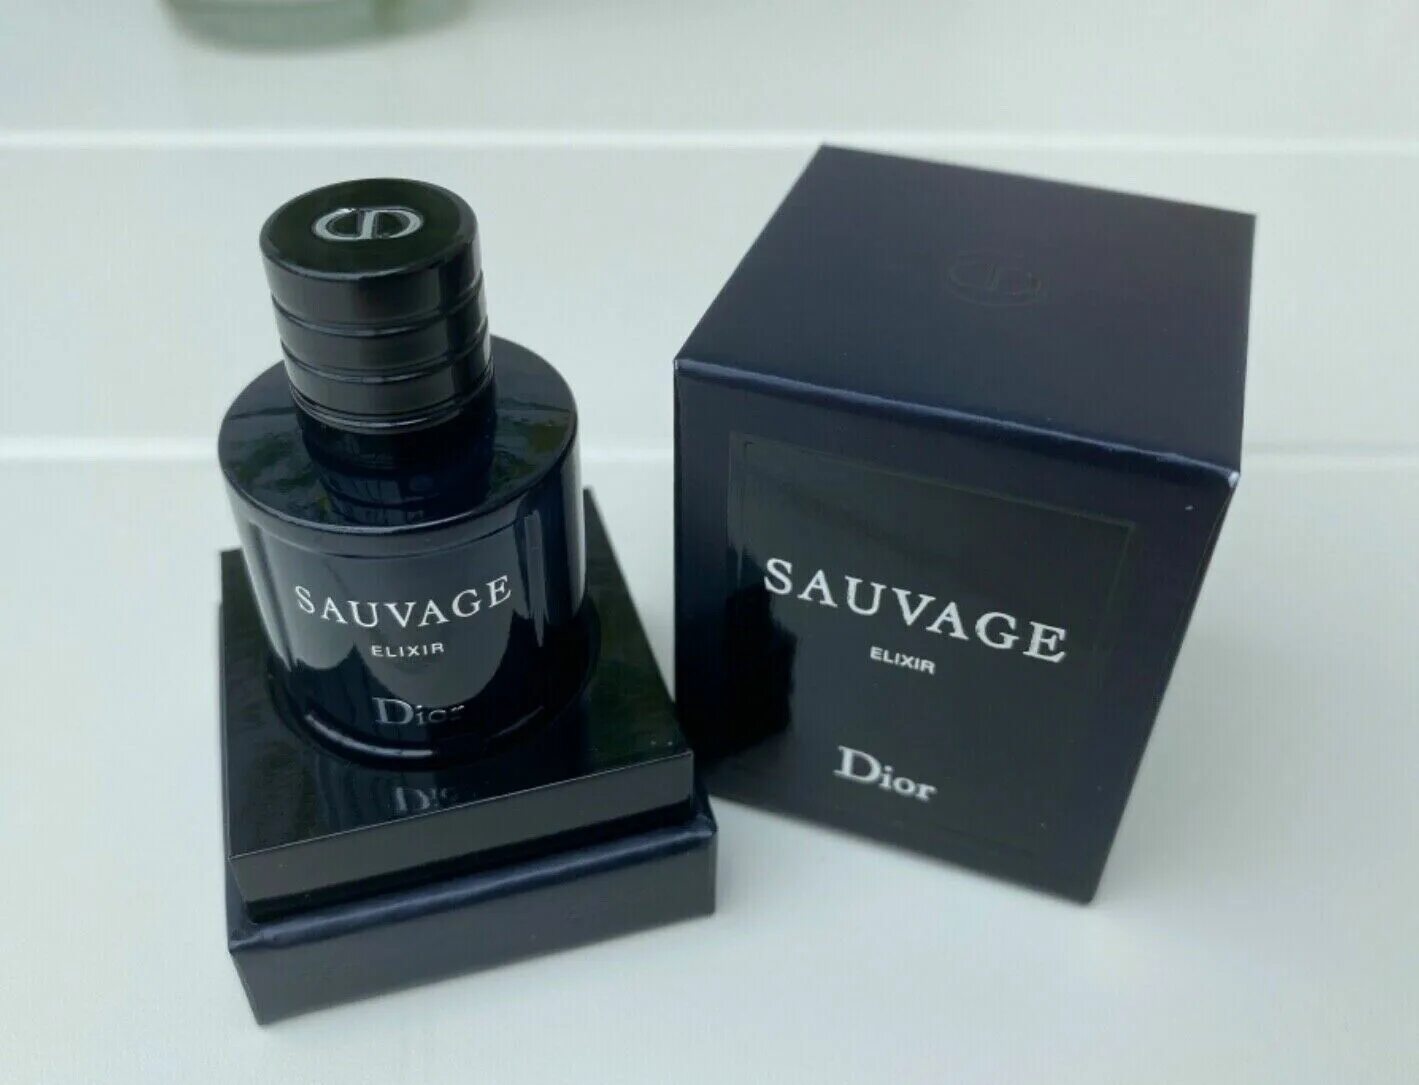 Диор эликсир мужской. Dior sauvage Elixir. Dior sauvage Elixir Parfum. Sauvage Dior Elixir мужские. Dior sauvage Elixir 60ml.